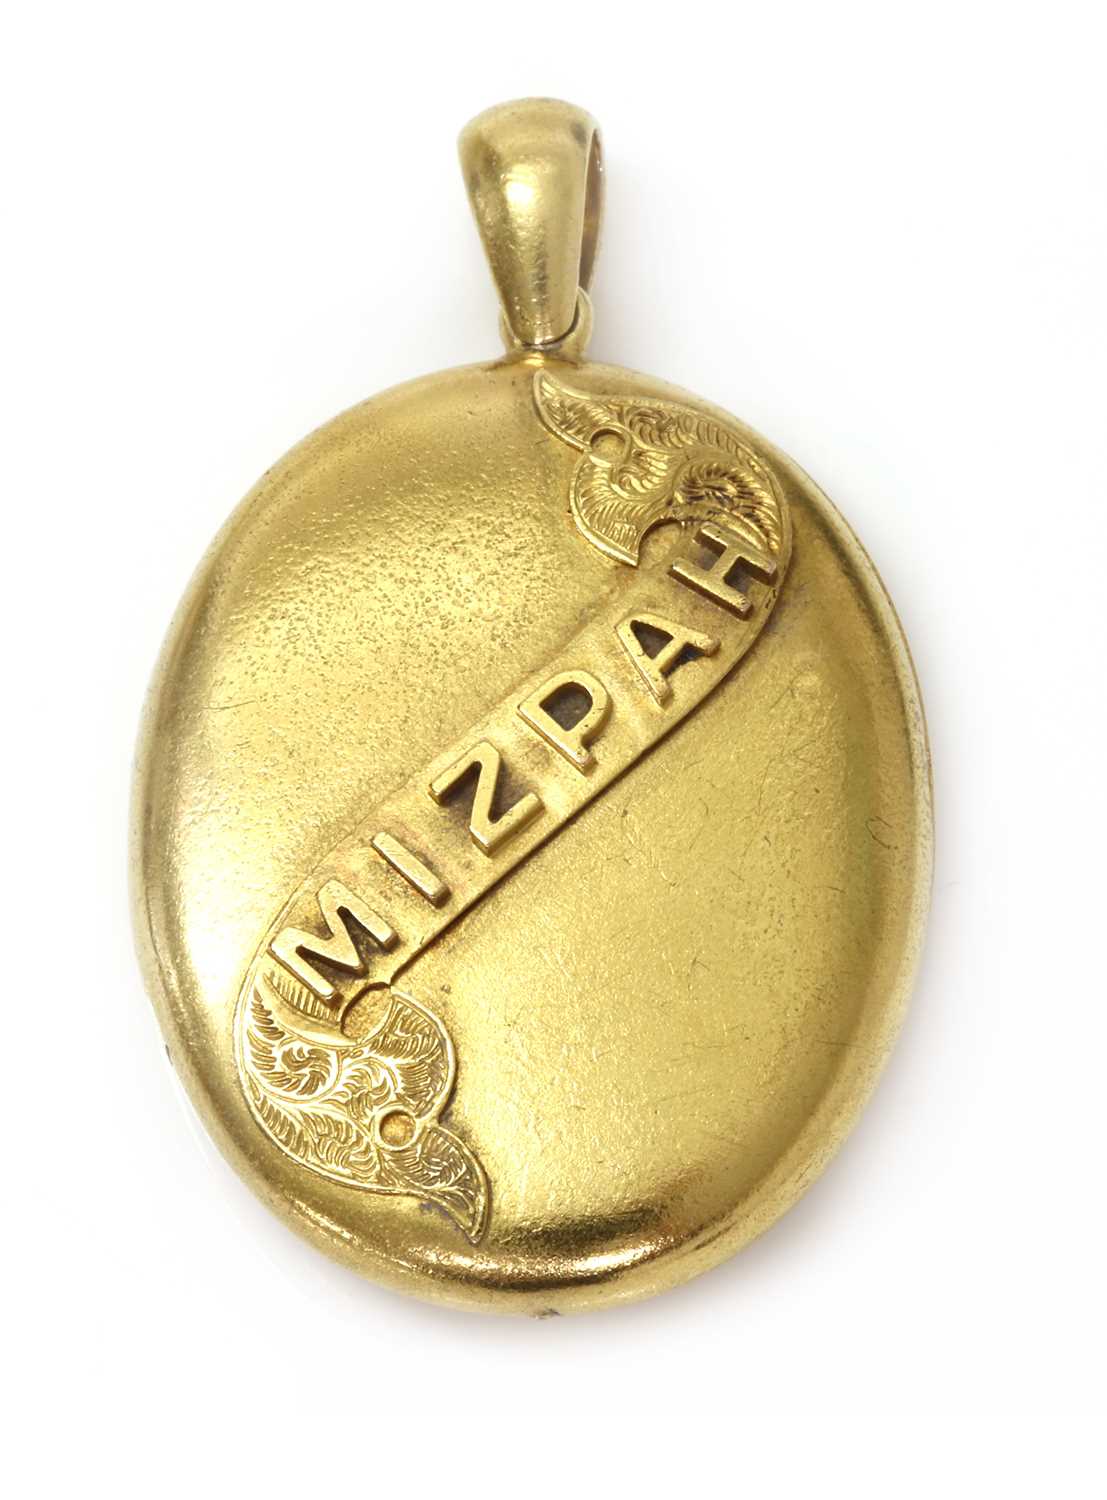 Lot 126 - A cased Edwardian gold 'Mizpah' locket